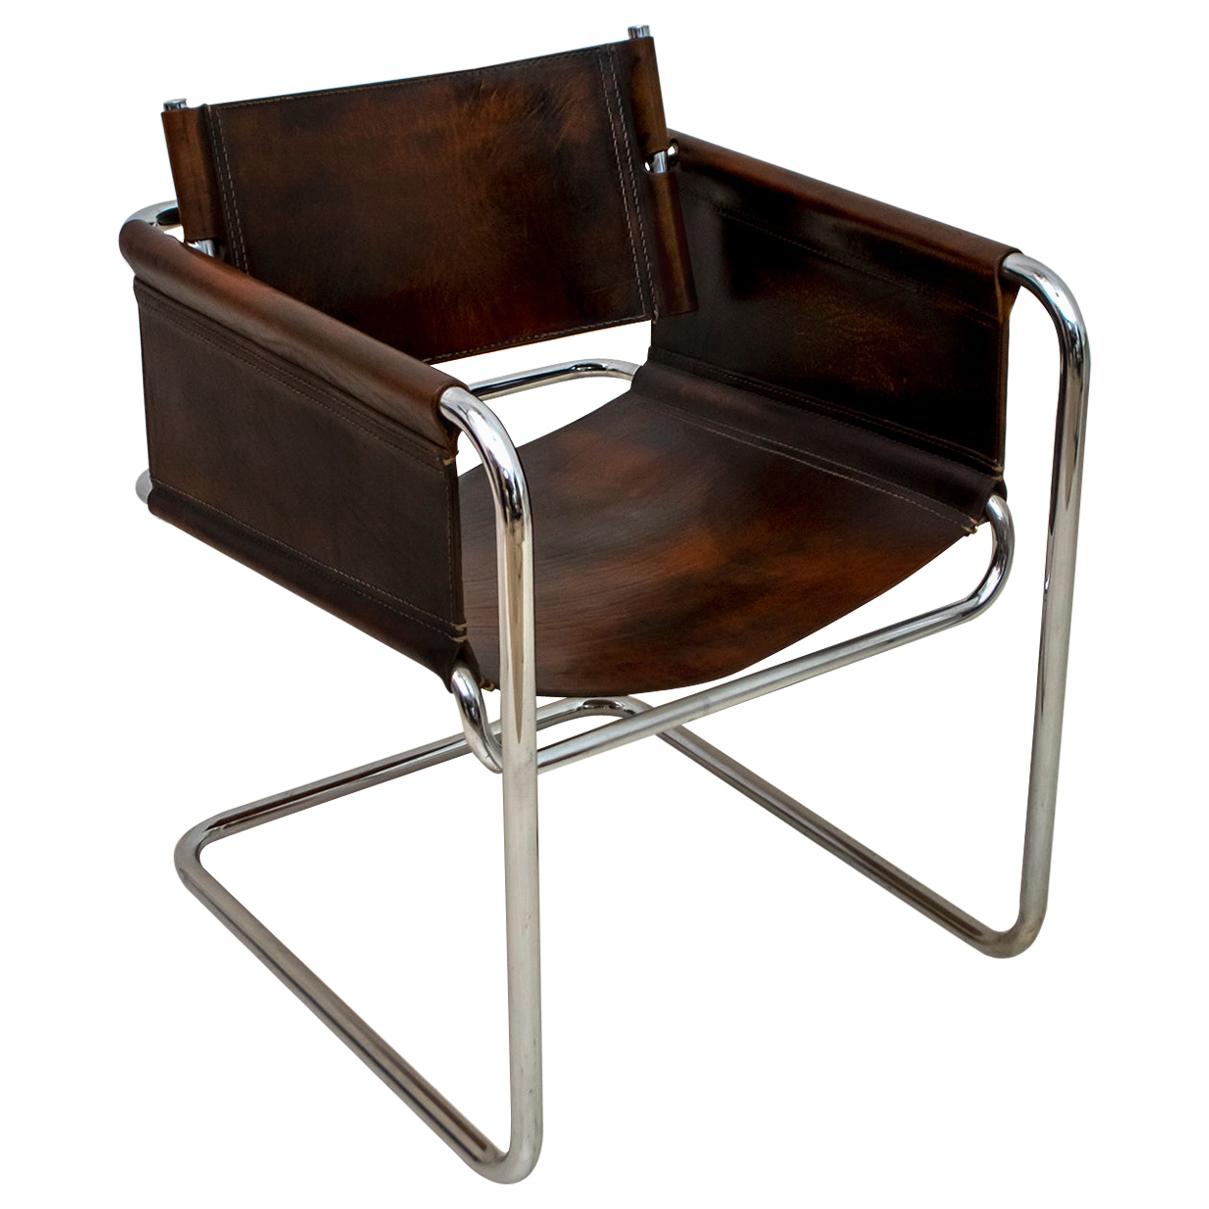 Mid-Century Modern Italian Steel and Leather "Bauhaus" Style Armchair, 1960s